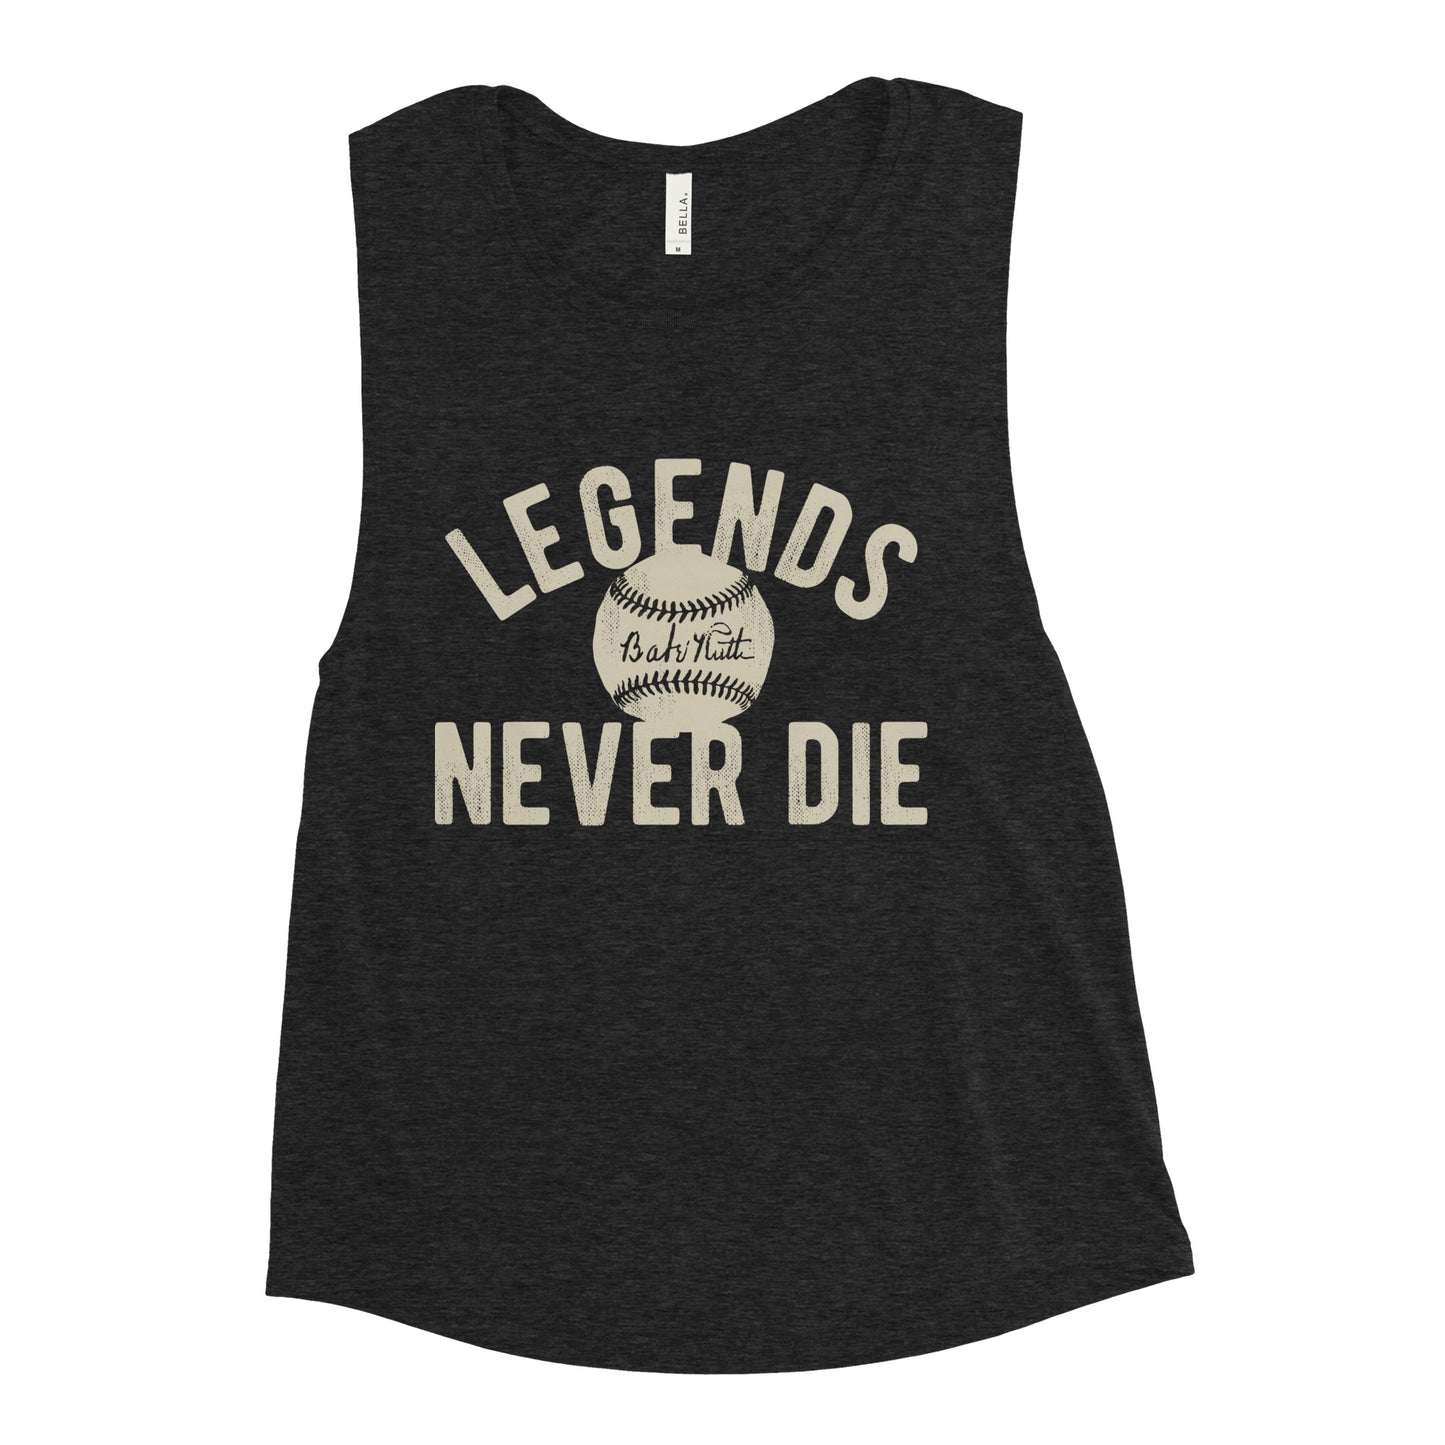 Legends Never Die Women's Muscle Tank